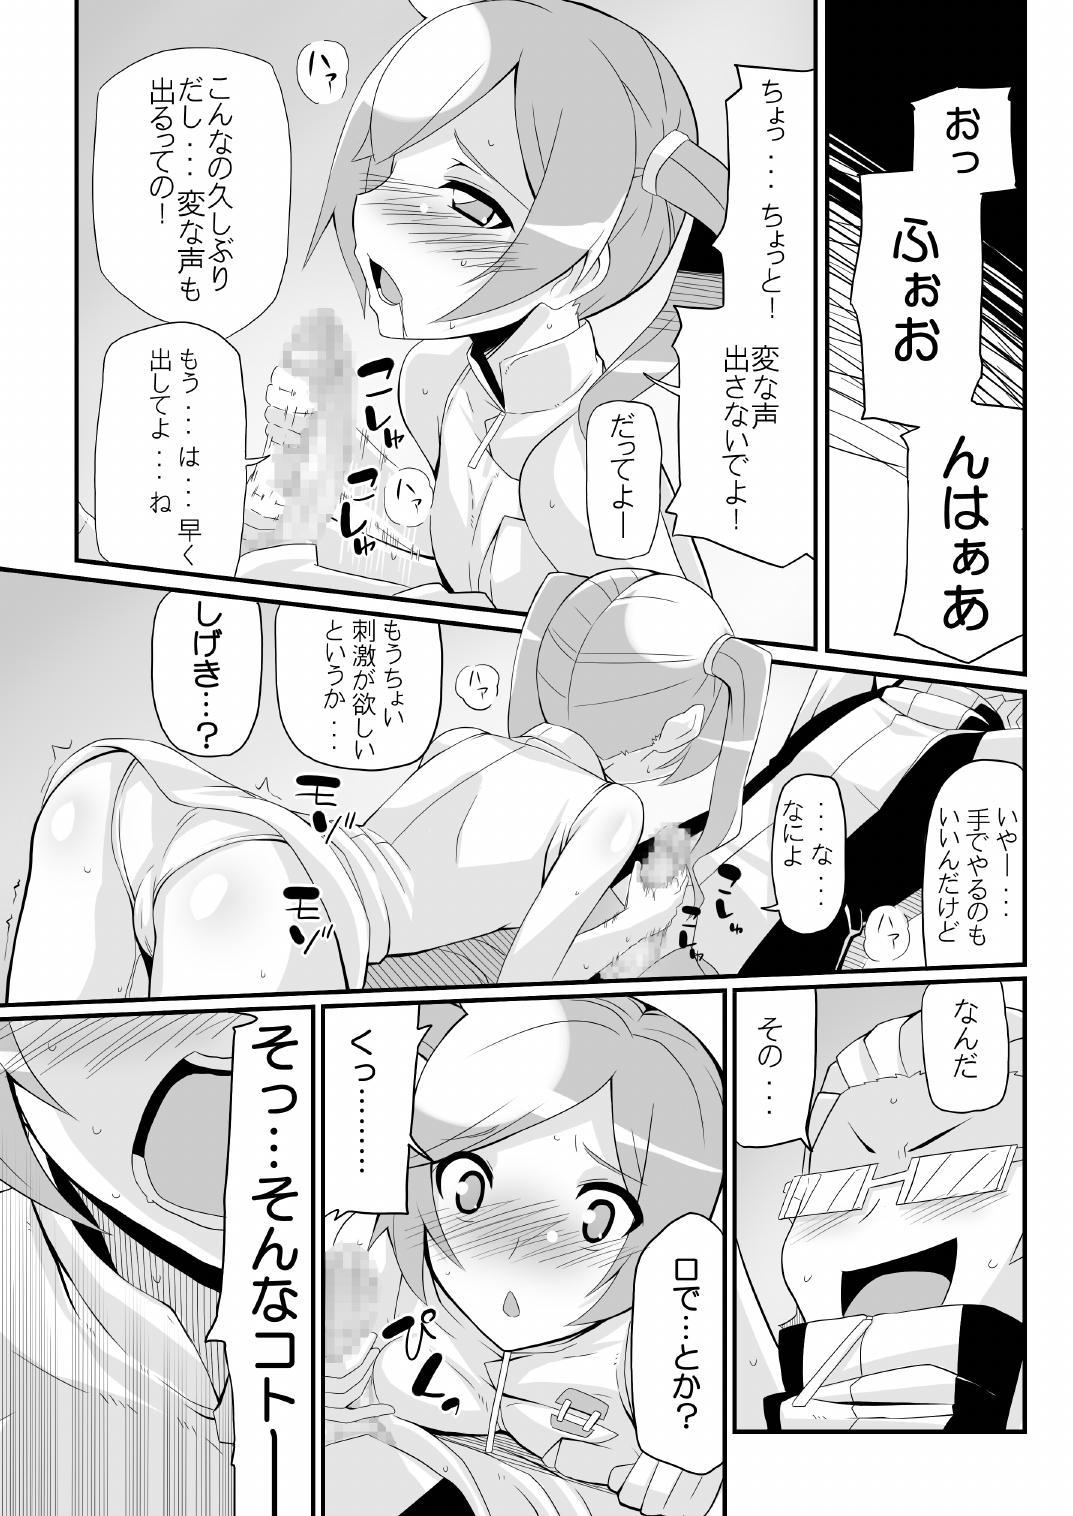 Italian Re:Akiho/Rinatize Ero - Digimon Sexy Girl - Page 7